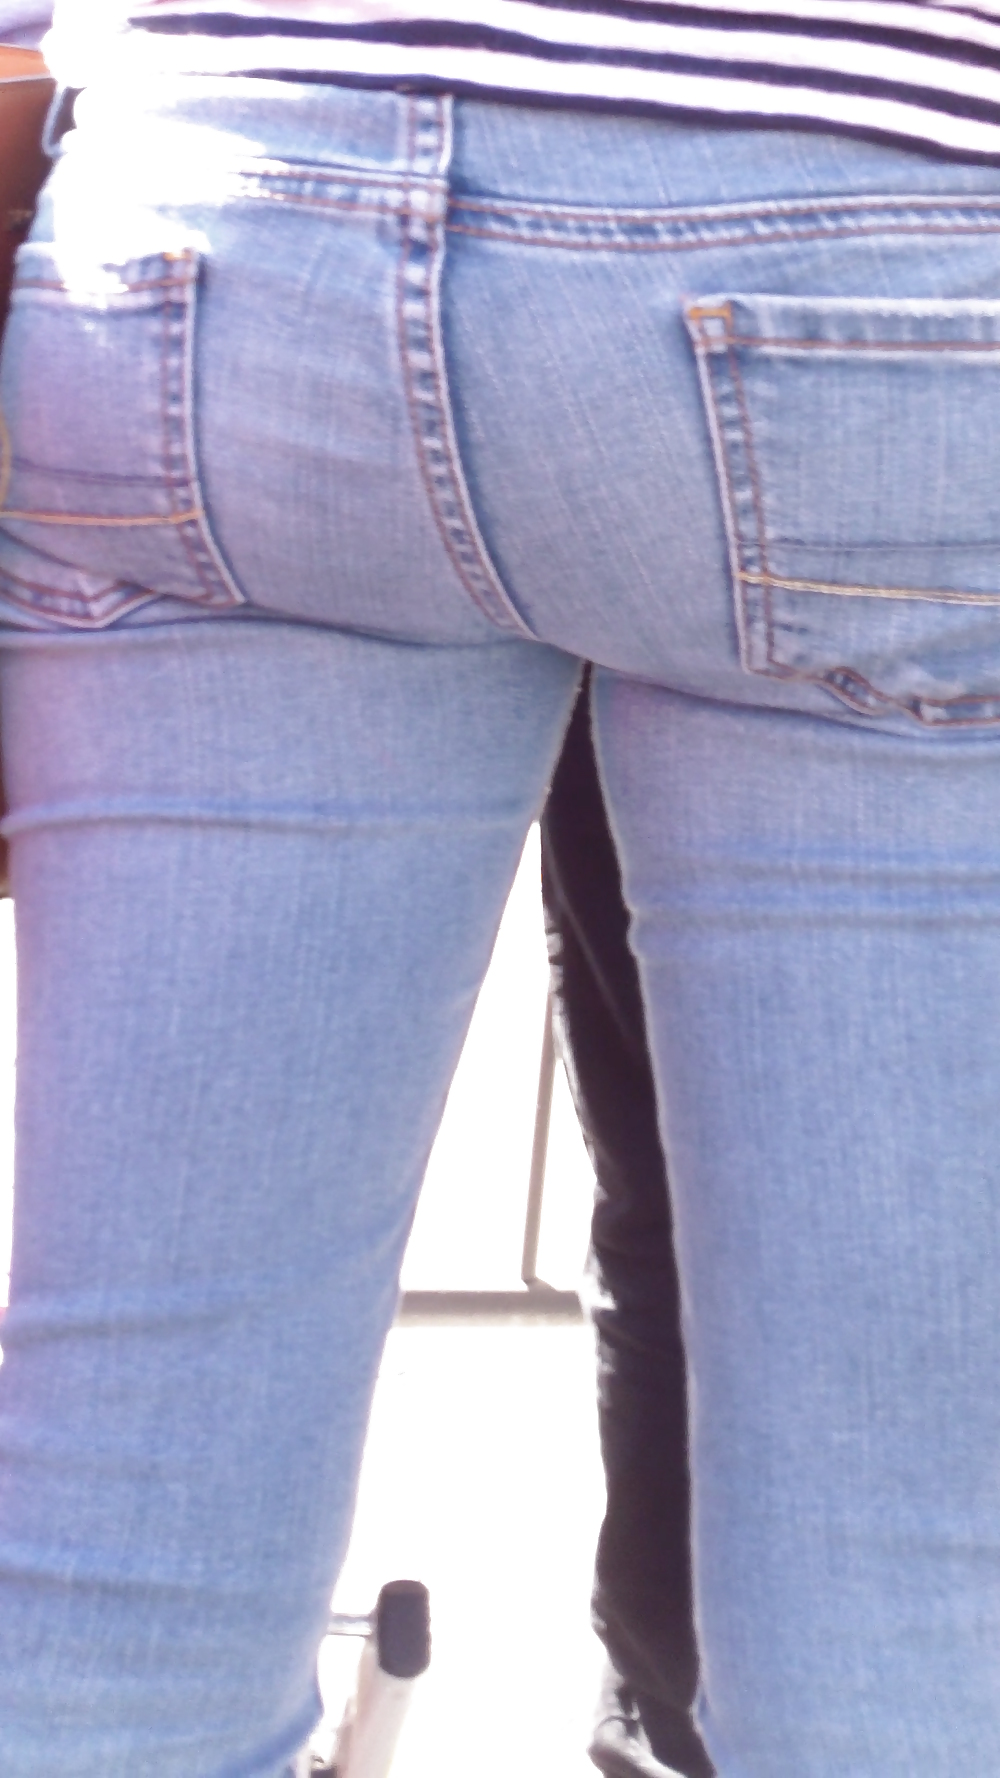 Teen ass & close up butt in jeans #19968846